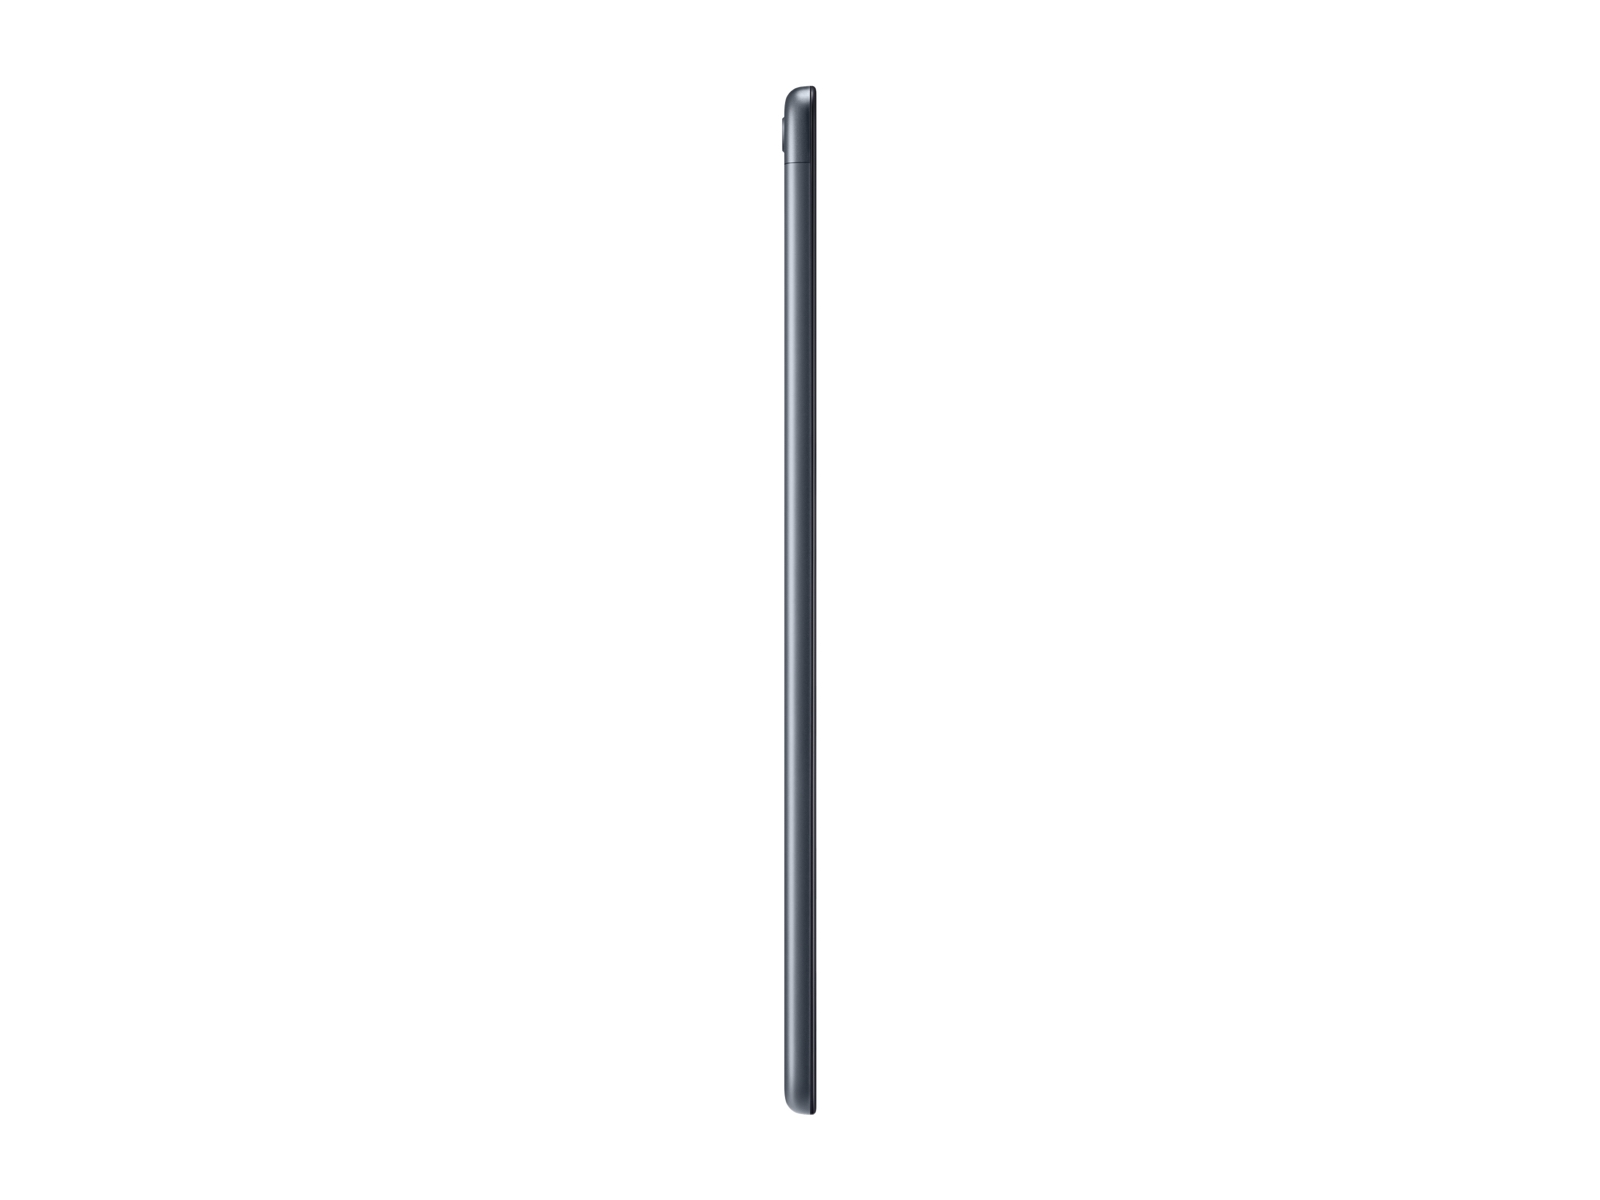 Galaxy Tab A 10.1 2019 32GB Black Wi Fi Tablets SM-T510NZKAXAR | Samsung US